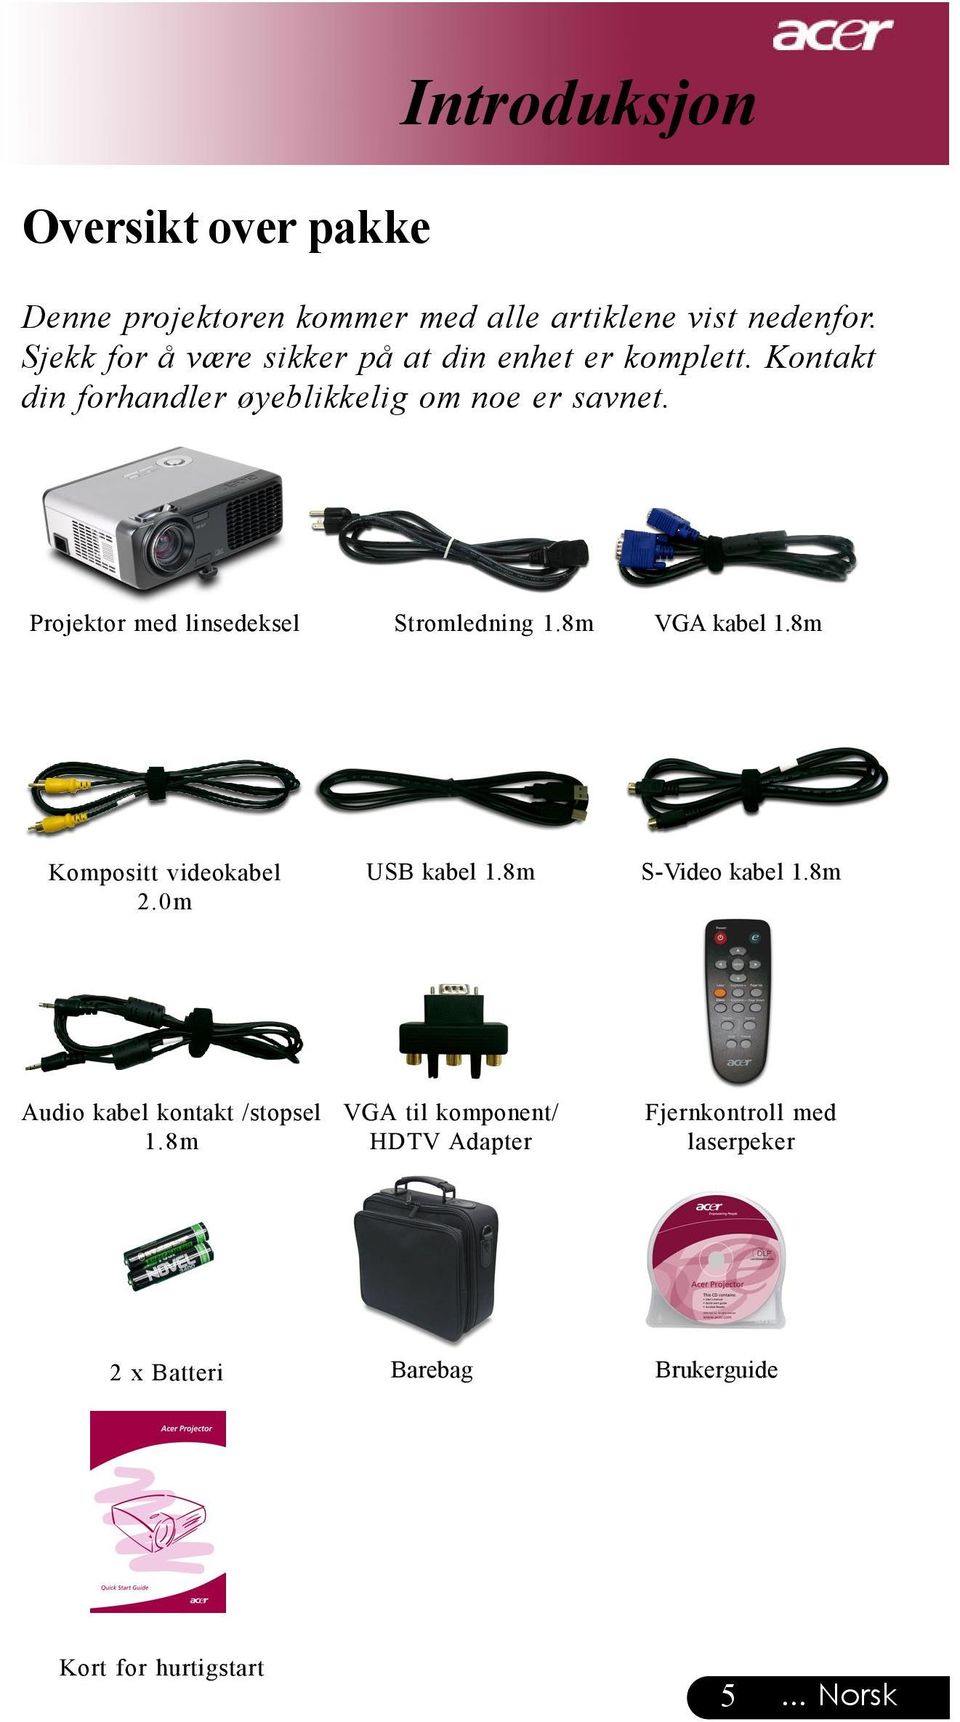 Projektor med linsedeksel Stromledning 1.8m VGA kabel 1.8m Kompositt videokabel 2.0m USB kabel 1.8m S-Video kabel 1.